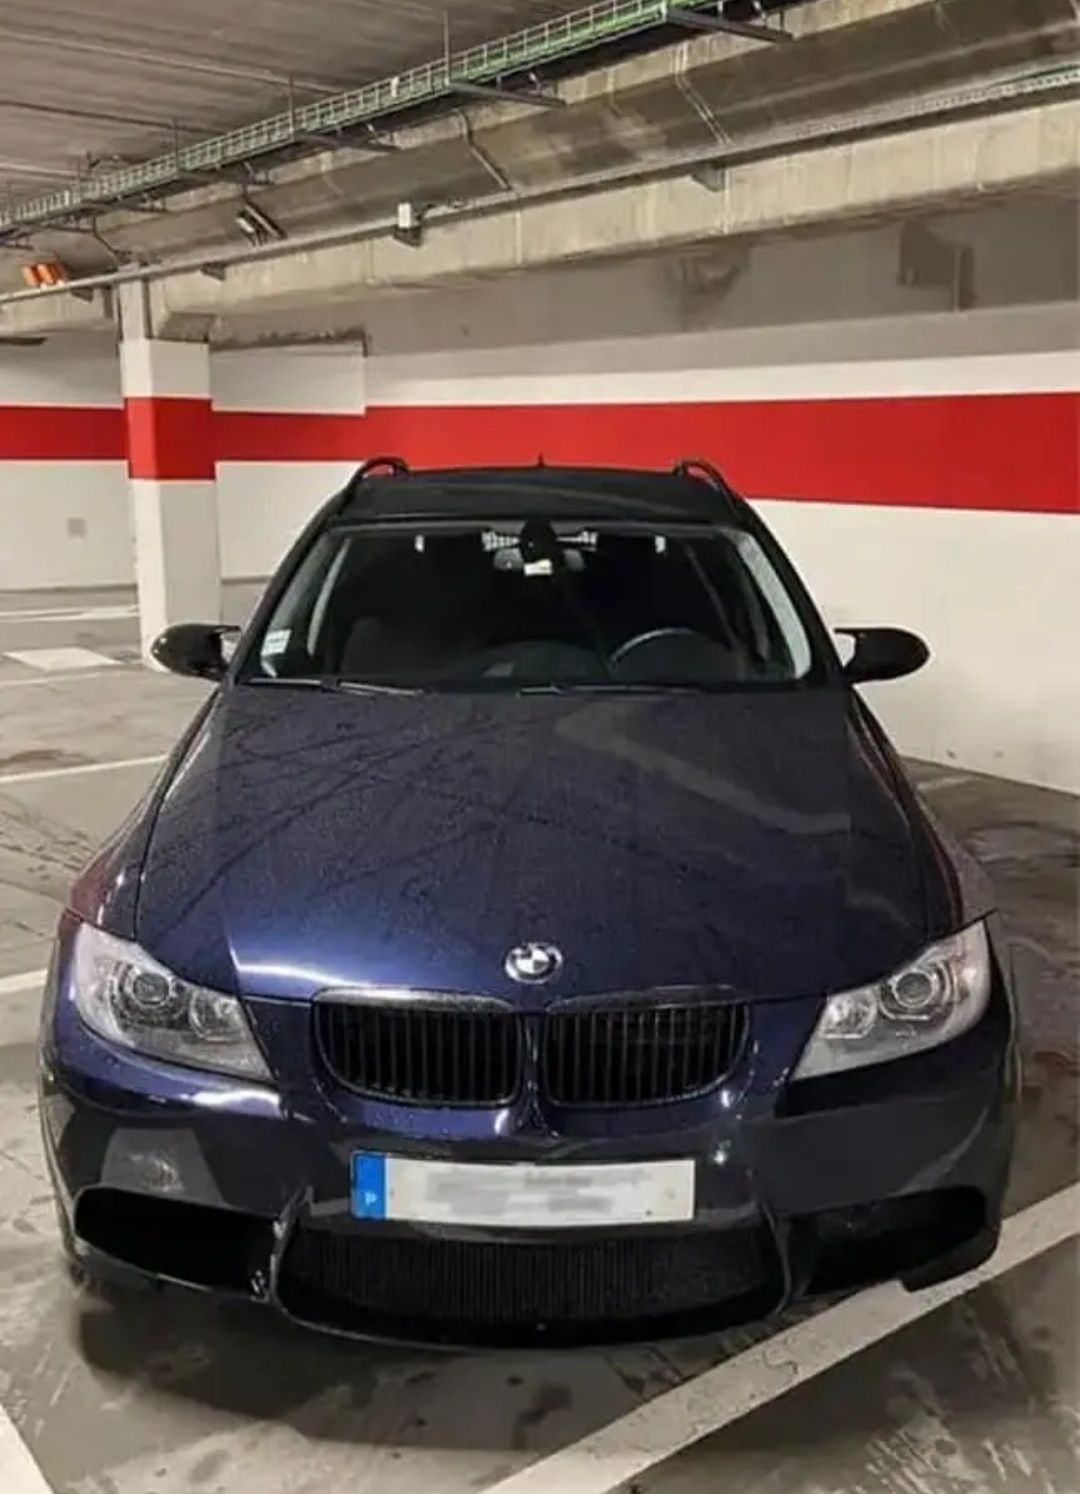 BMW E91.
2008.
260000km.